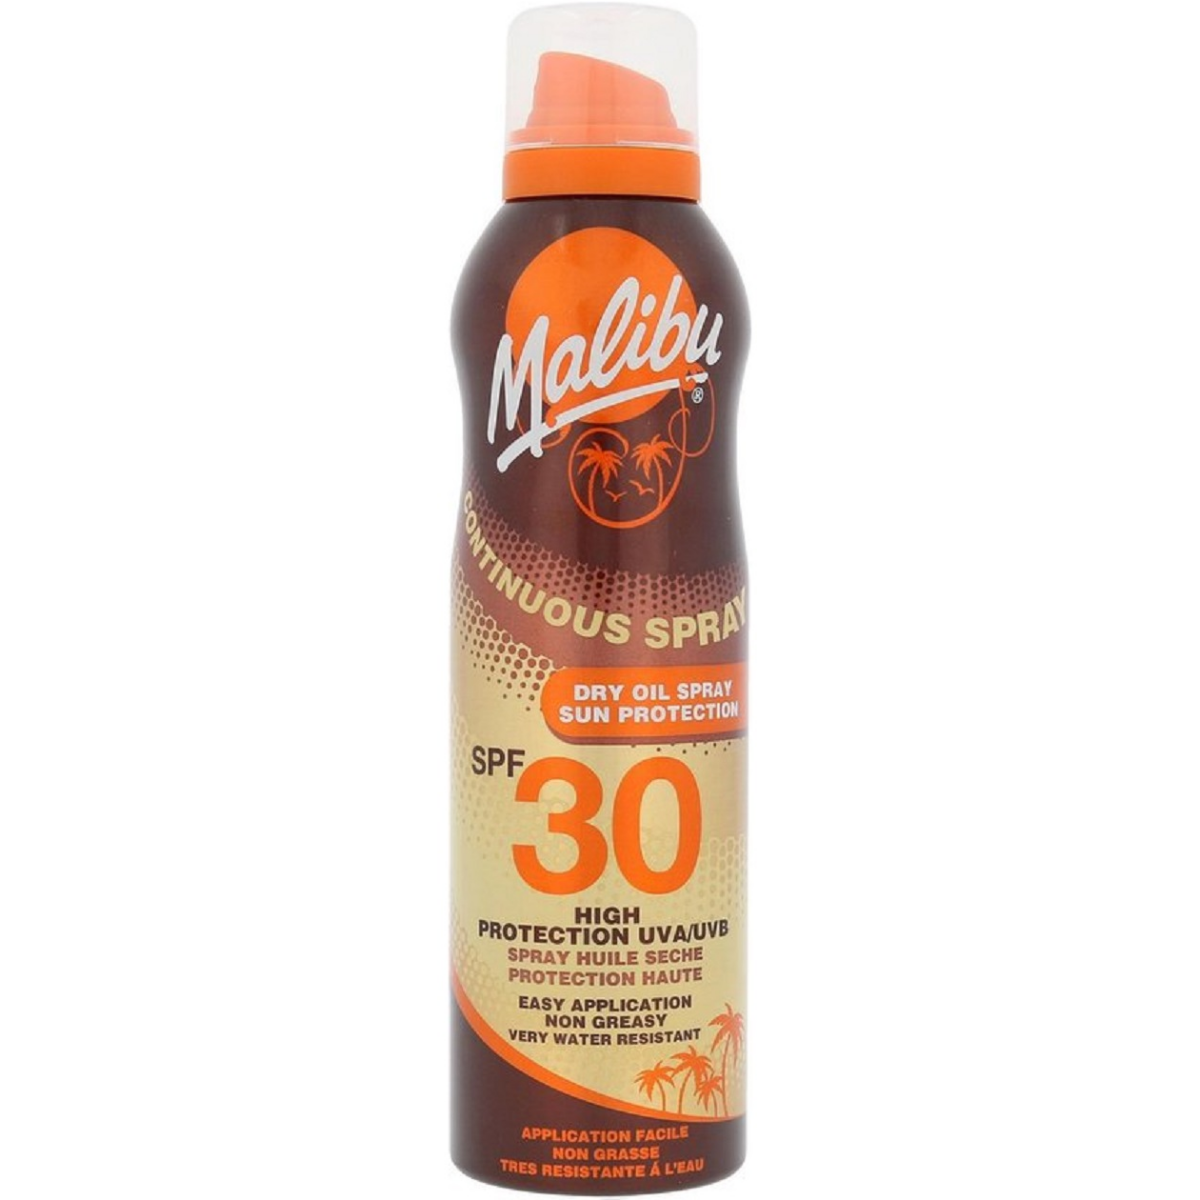 Malibu Continuous Dry Oil Spray SPF30 175ml Waterproof Αντιηλιακά.